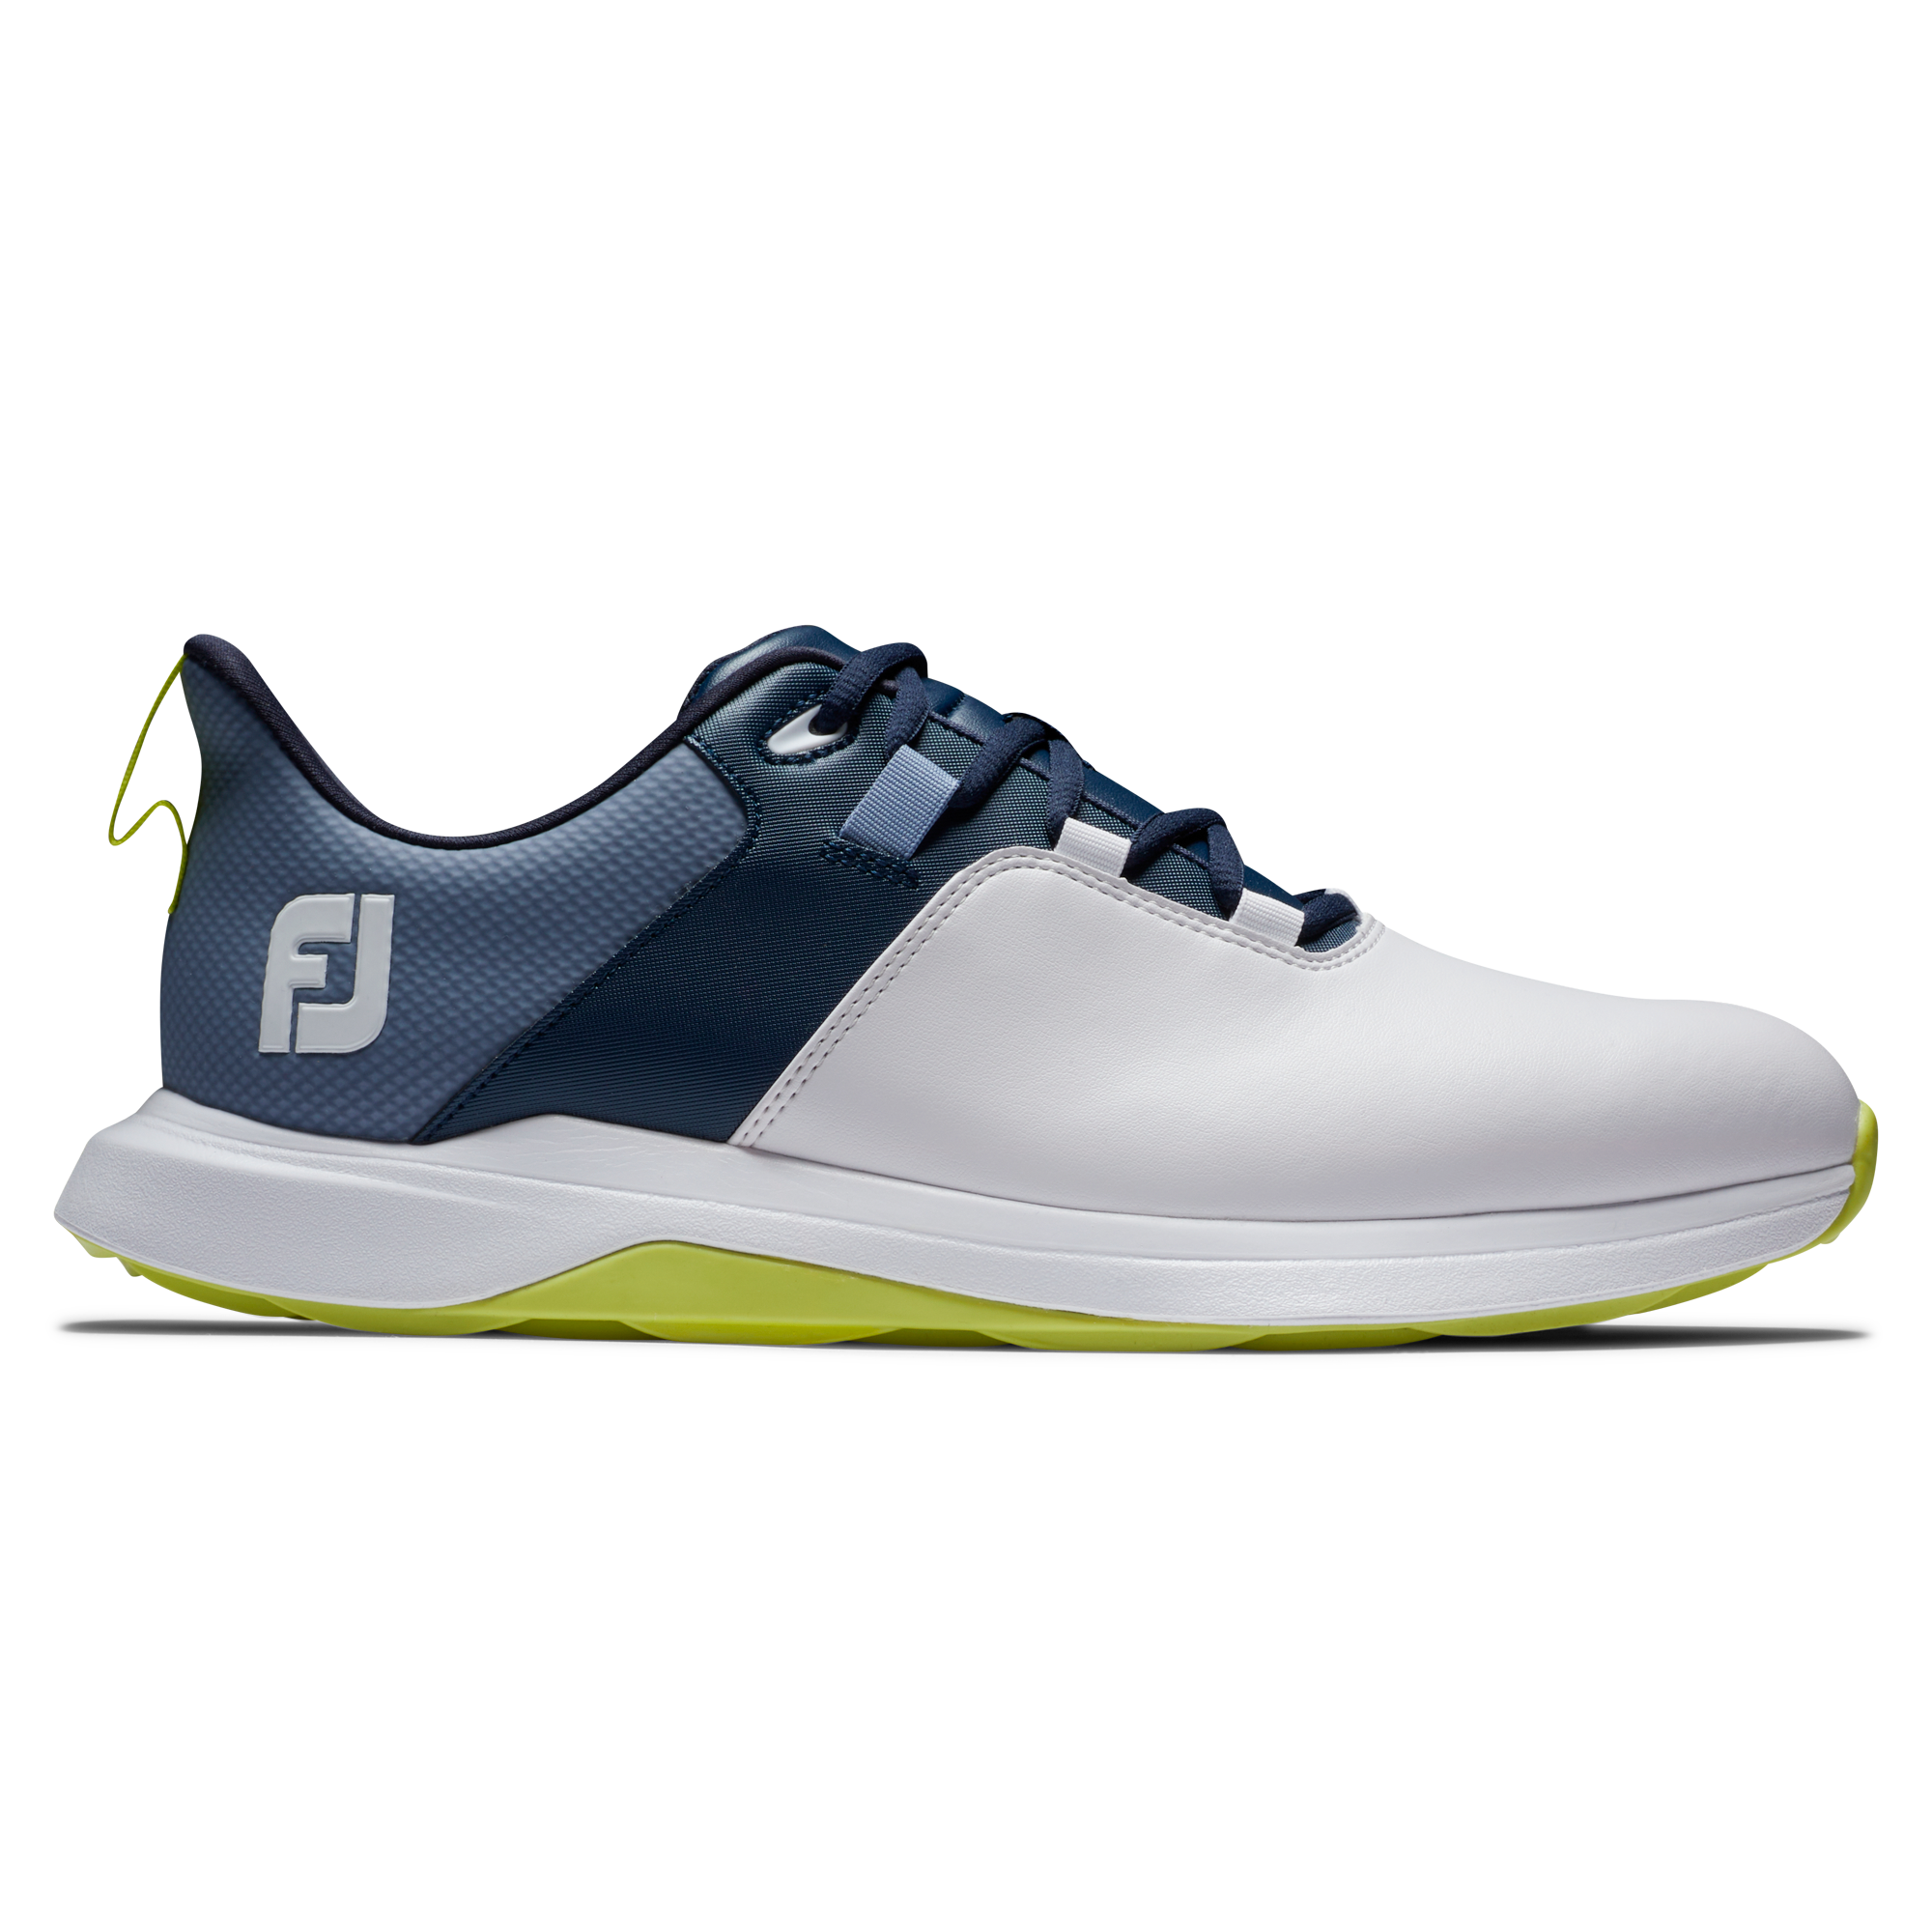 FootJoy ProLite pánské golfové boty, bílé/tmavě modré, vel. 10,5 UK